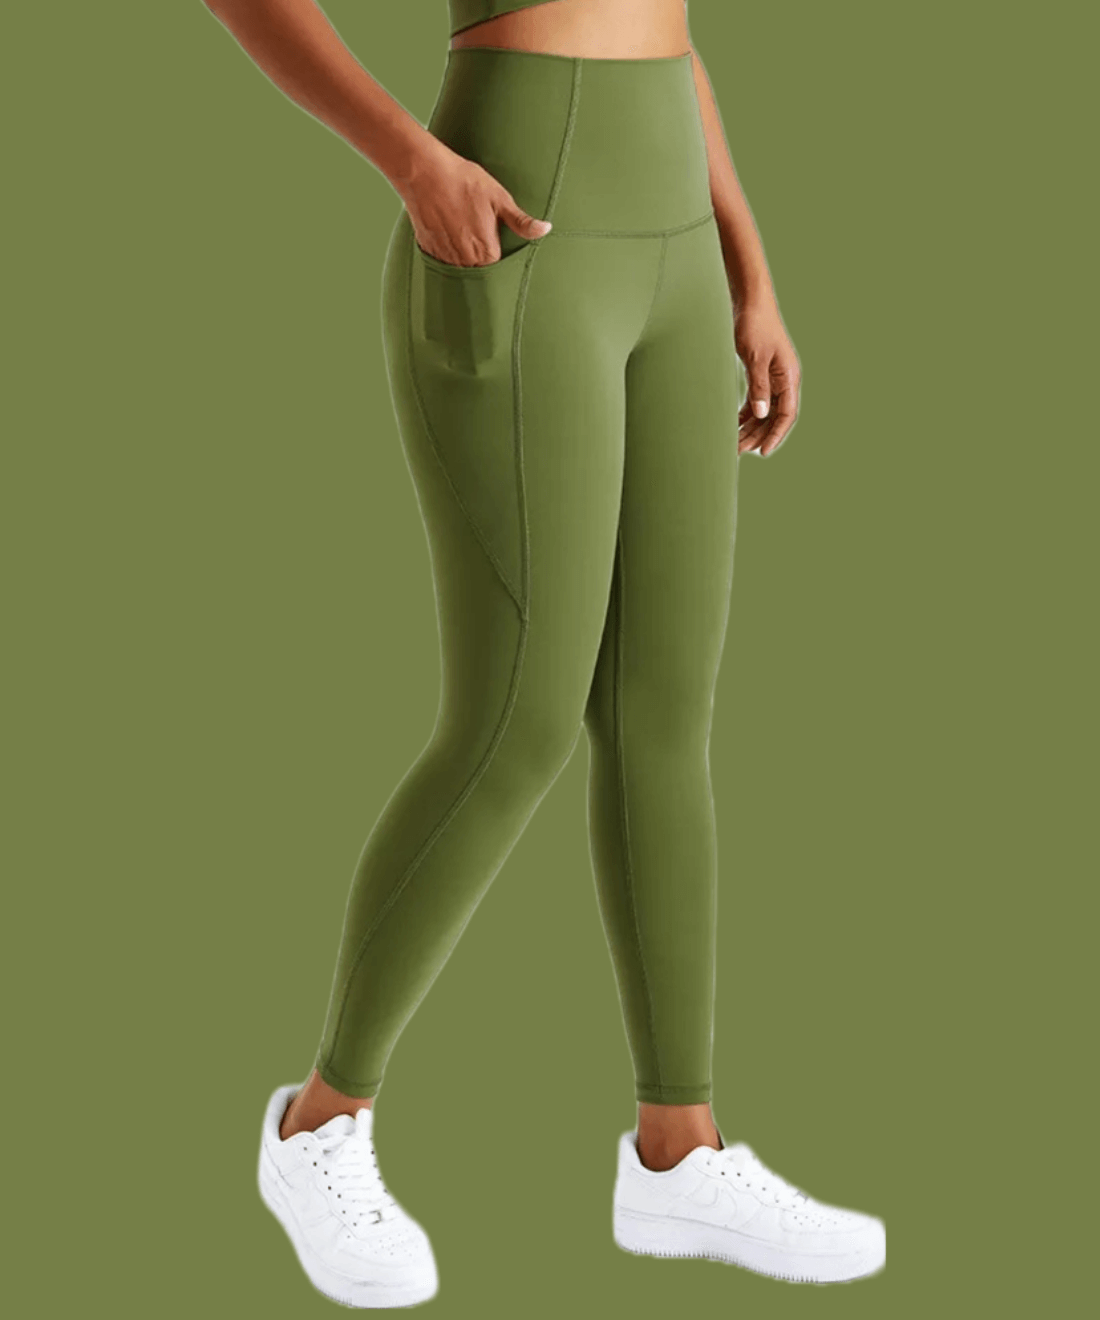 Soft Surroundings Olive Green Moto Zipper Pocket Thigh Leggings